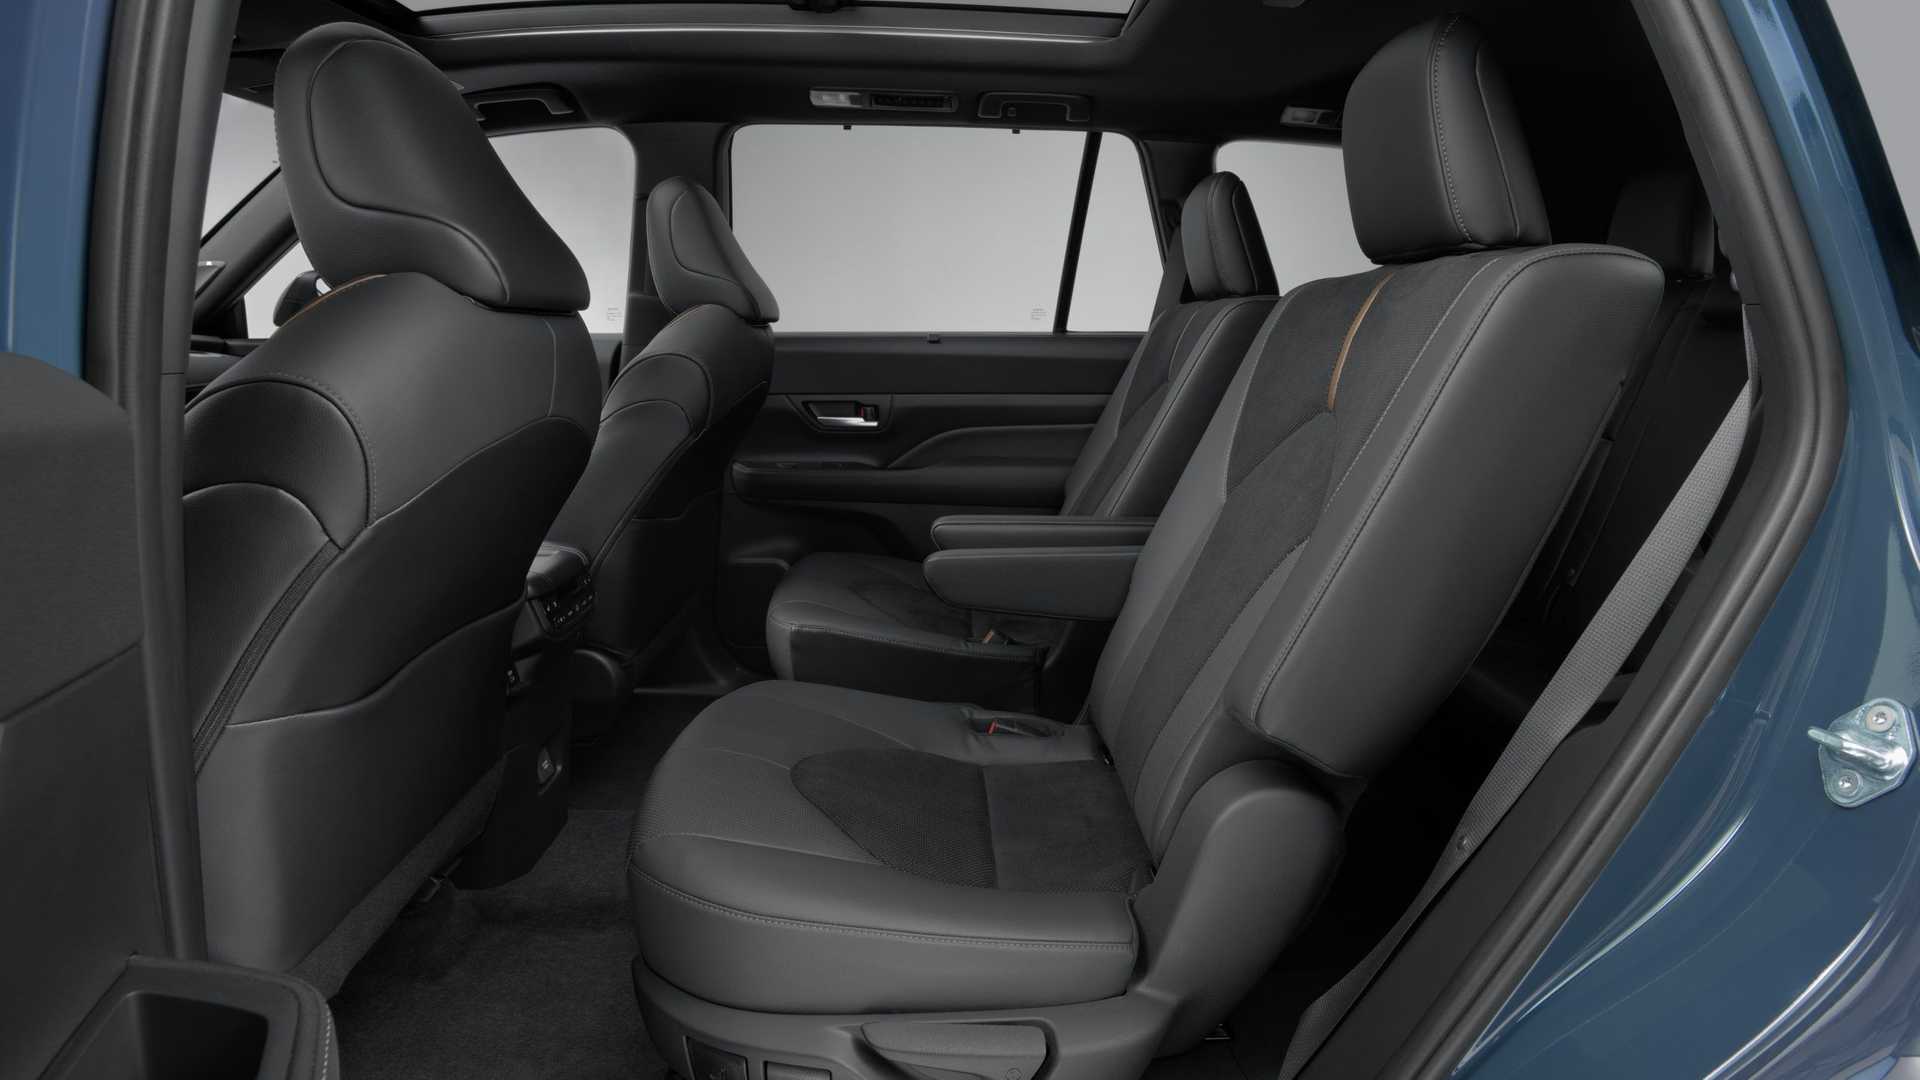 Yeni Toyota Grand Highlander tanıtıldı: 362 hp hibrit motor, 8 kişilik yaşam alanı